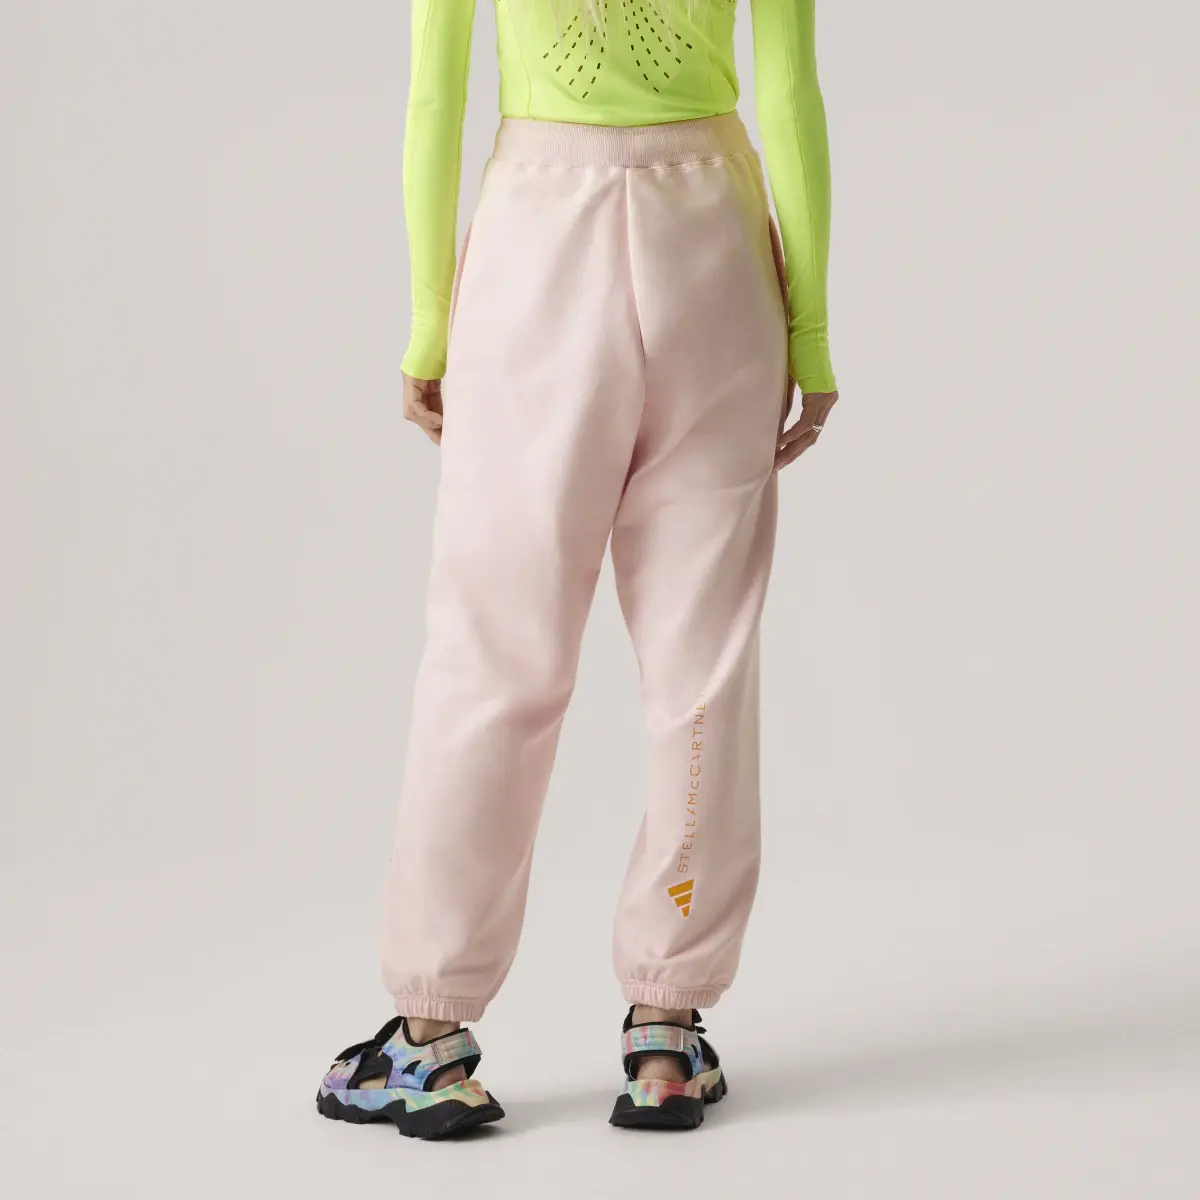 Adidas by Stella McCartney Sportswear Sweat Pants (GENDER NEUTRAL). 3